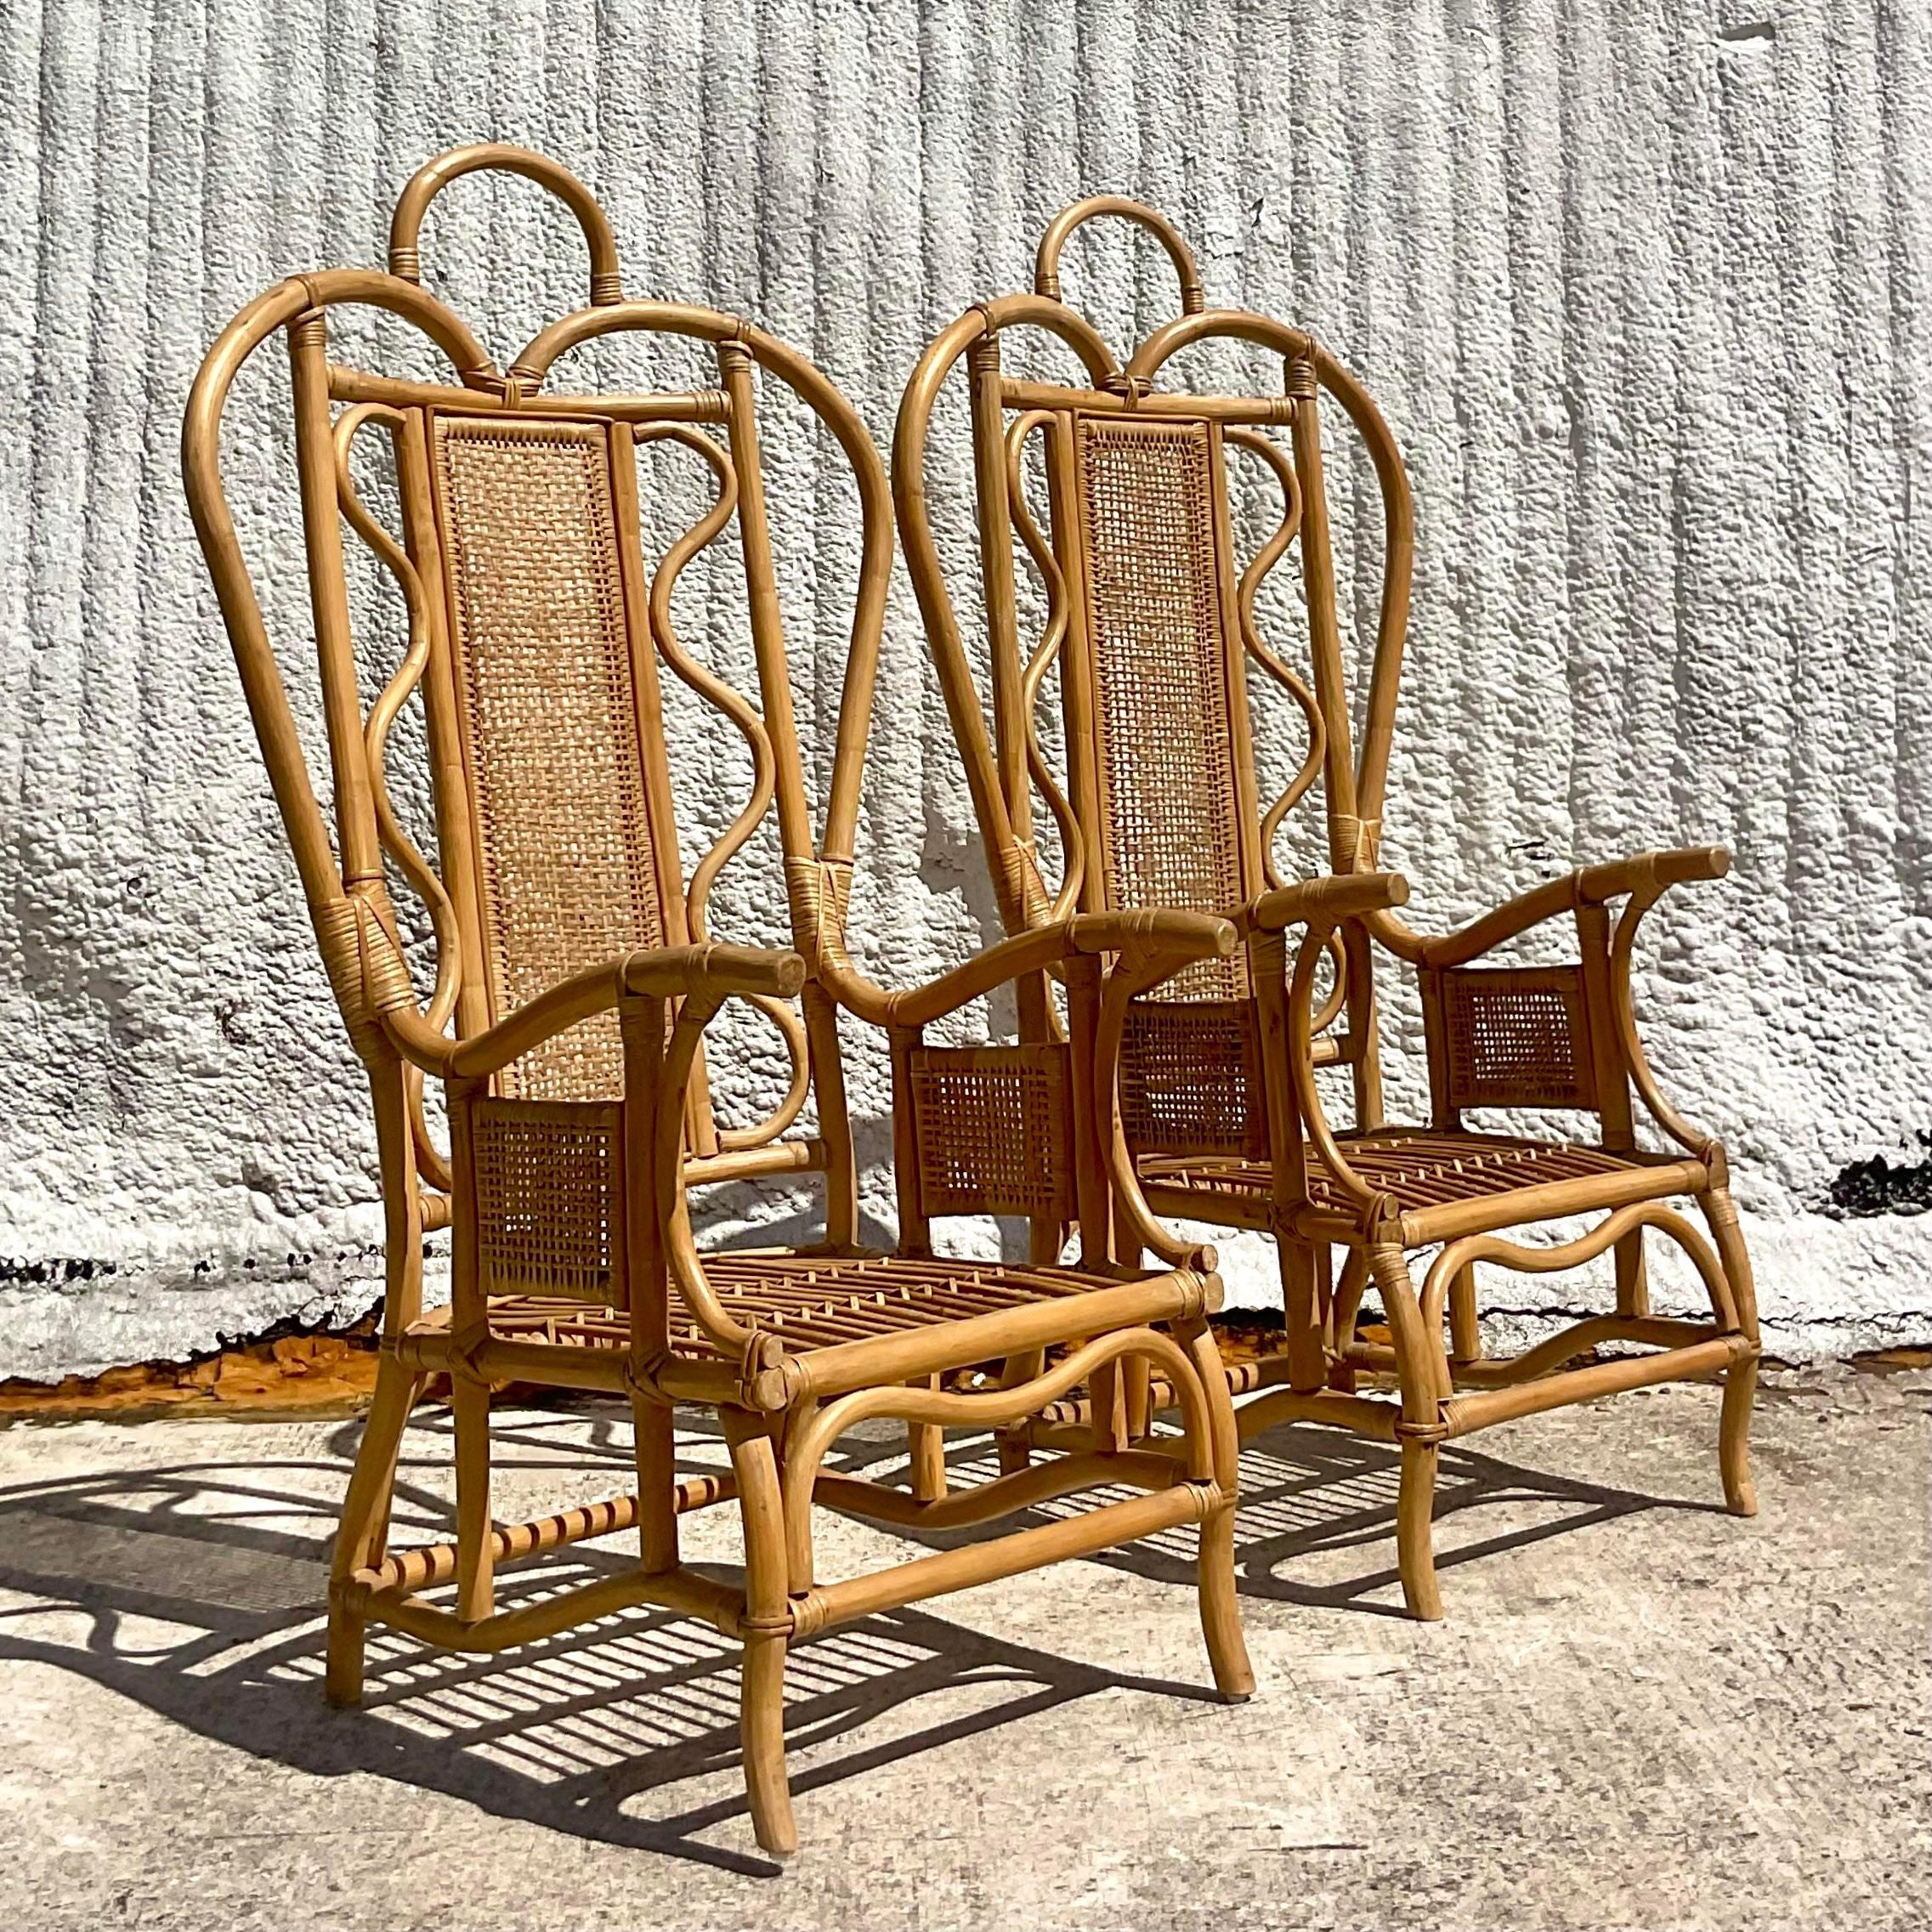 Lassen Sie sich von dem eklektischen Charme unserer Vintage Boho Bent Rattan Ghandi Chairs verzaubern, einer kultigen Mischung aus Bohème-Stil und amerikanischer Handwerkskunst. Diese mit viel Liebe zum Detail gefertigten Stühle strahlen eine